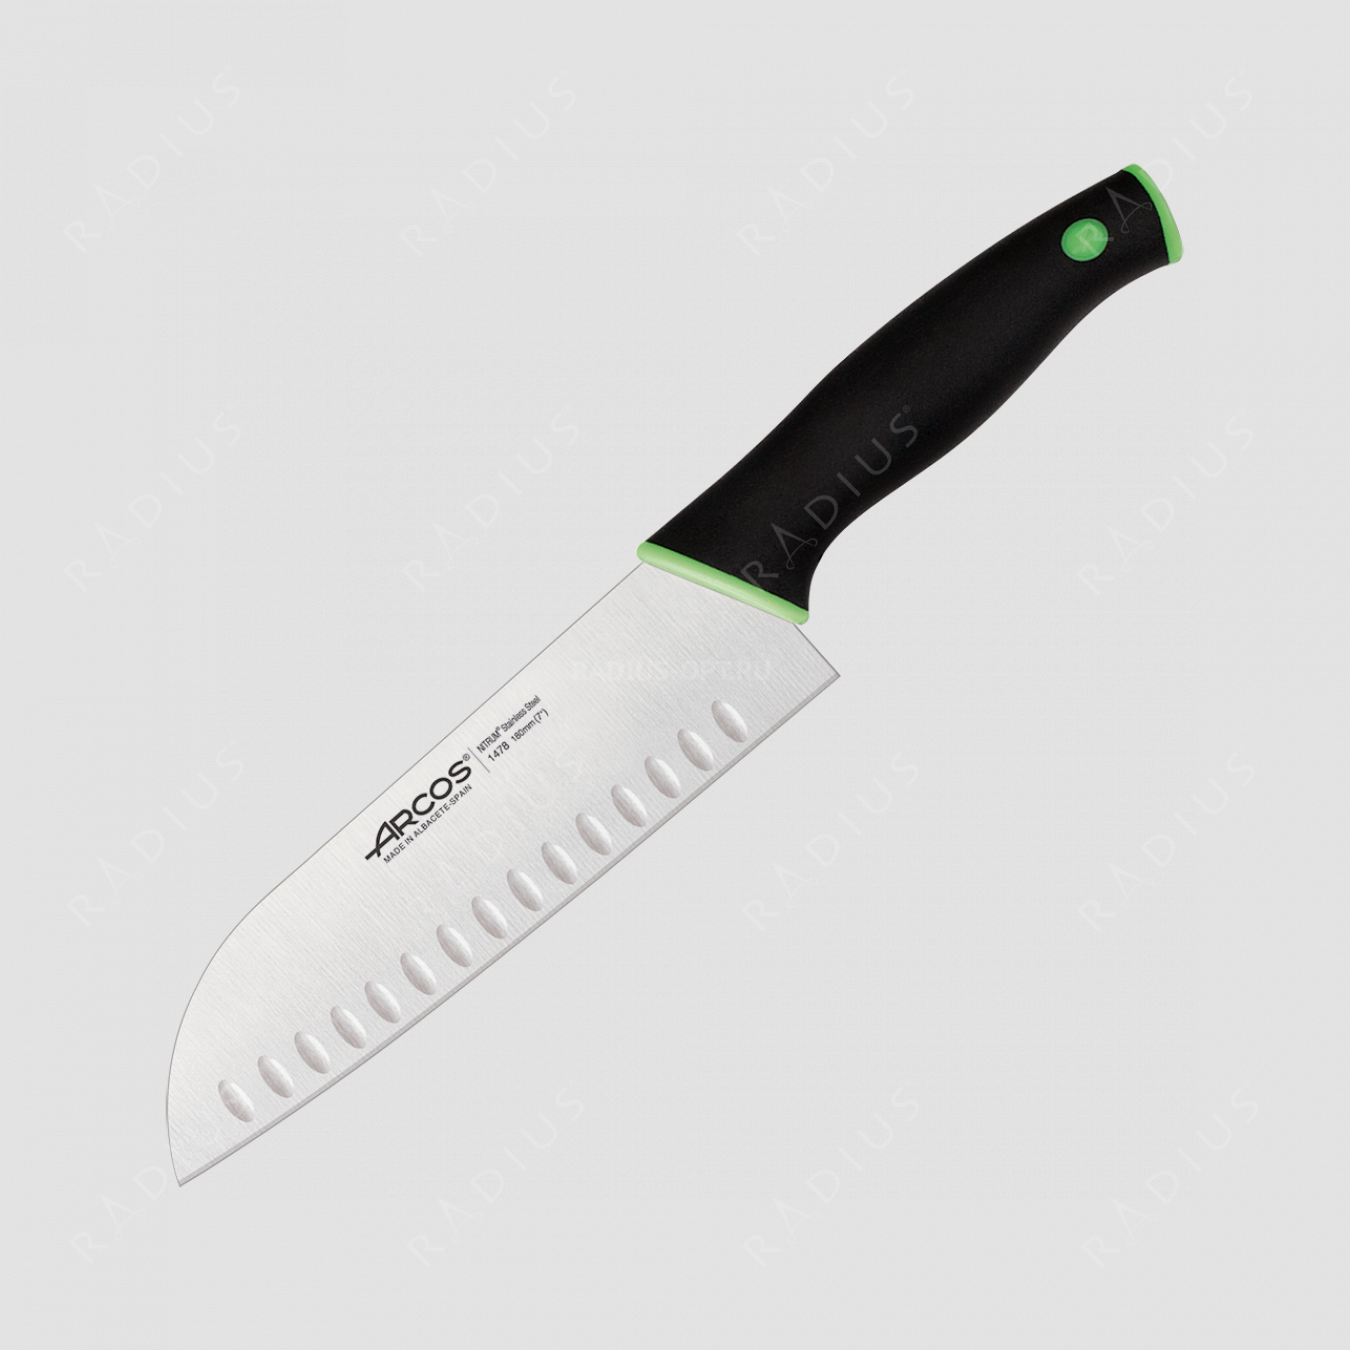 Нож кухонный Сантоку 18 см, серия Duo, ARCOS, Испания